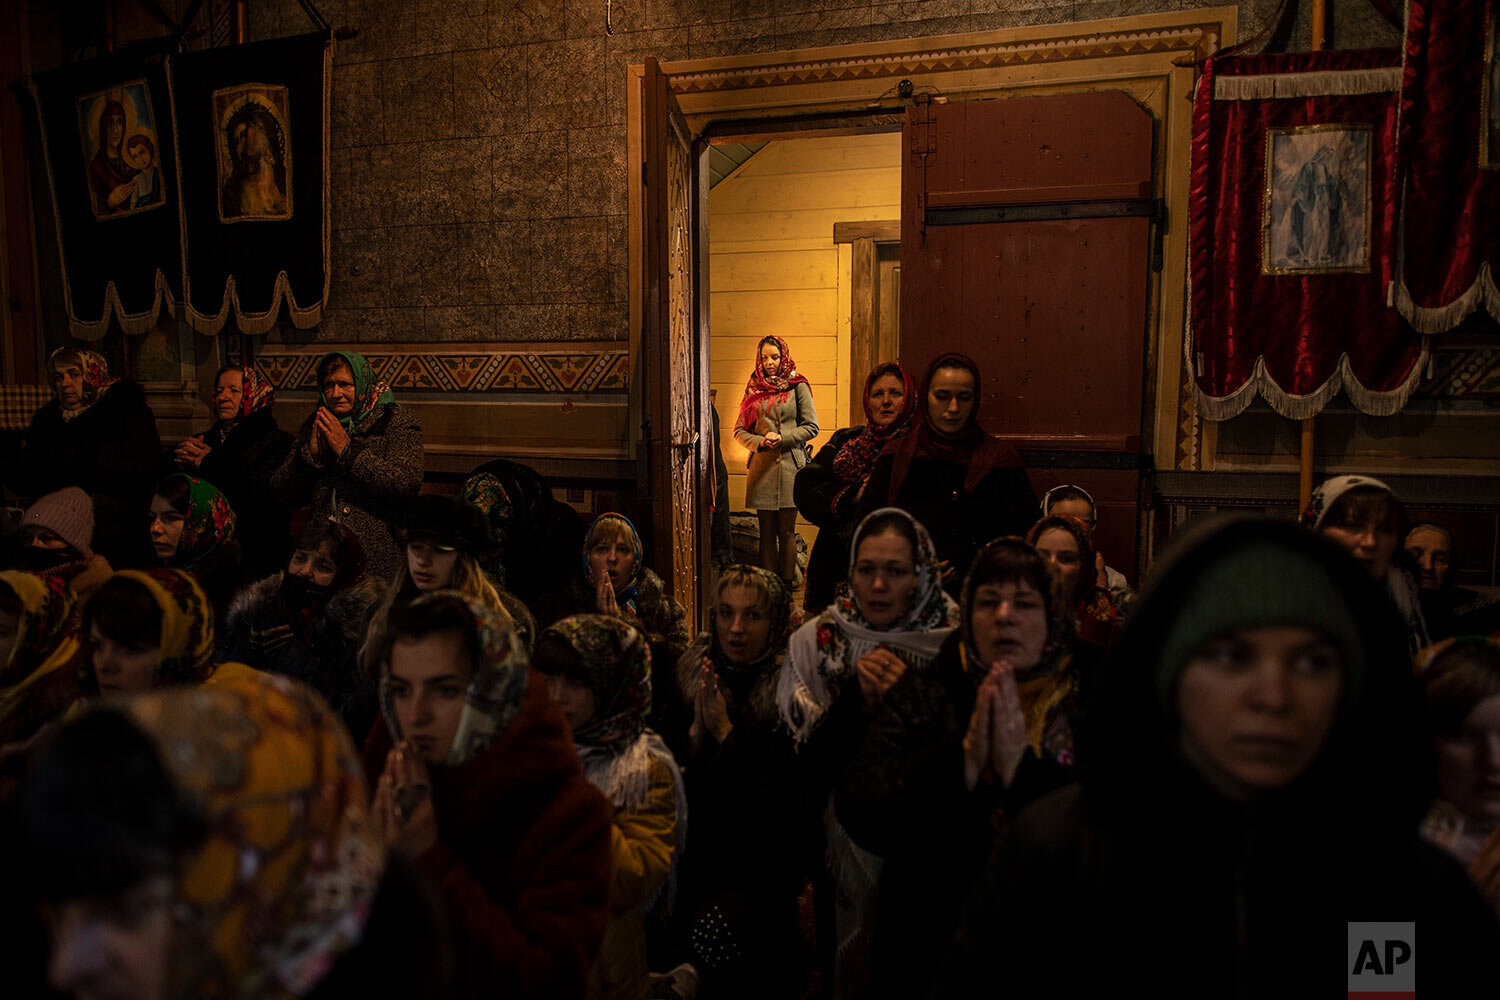  Parishioners attend the Orthodox Christmas Mass in the Holy Trinity church in Iltsi village, Ivano-Frankivsk region of Western Ukraine, Thursday, Jan. 7, 2021. (AP Photo/Evgeniy Maloletka) 